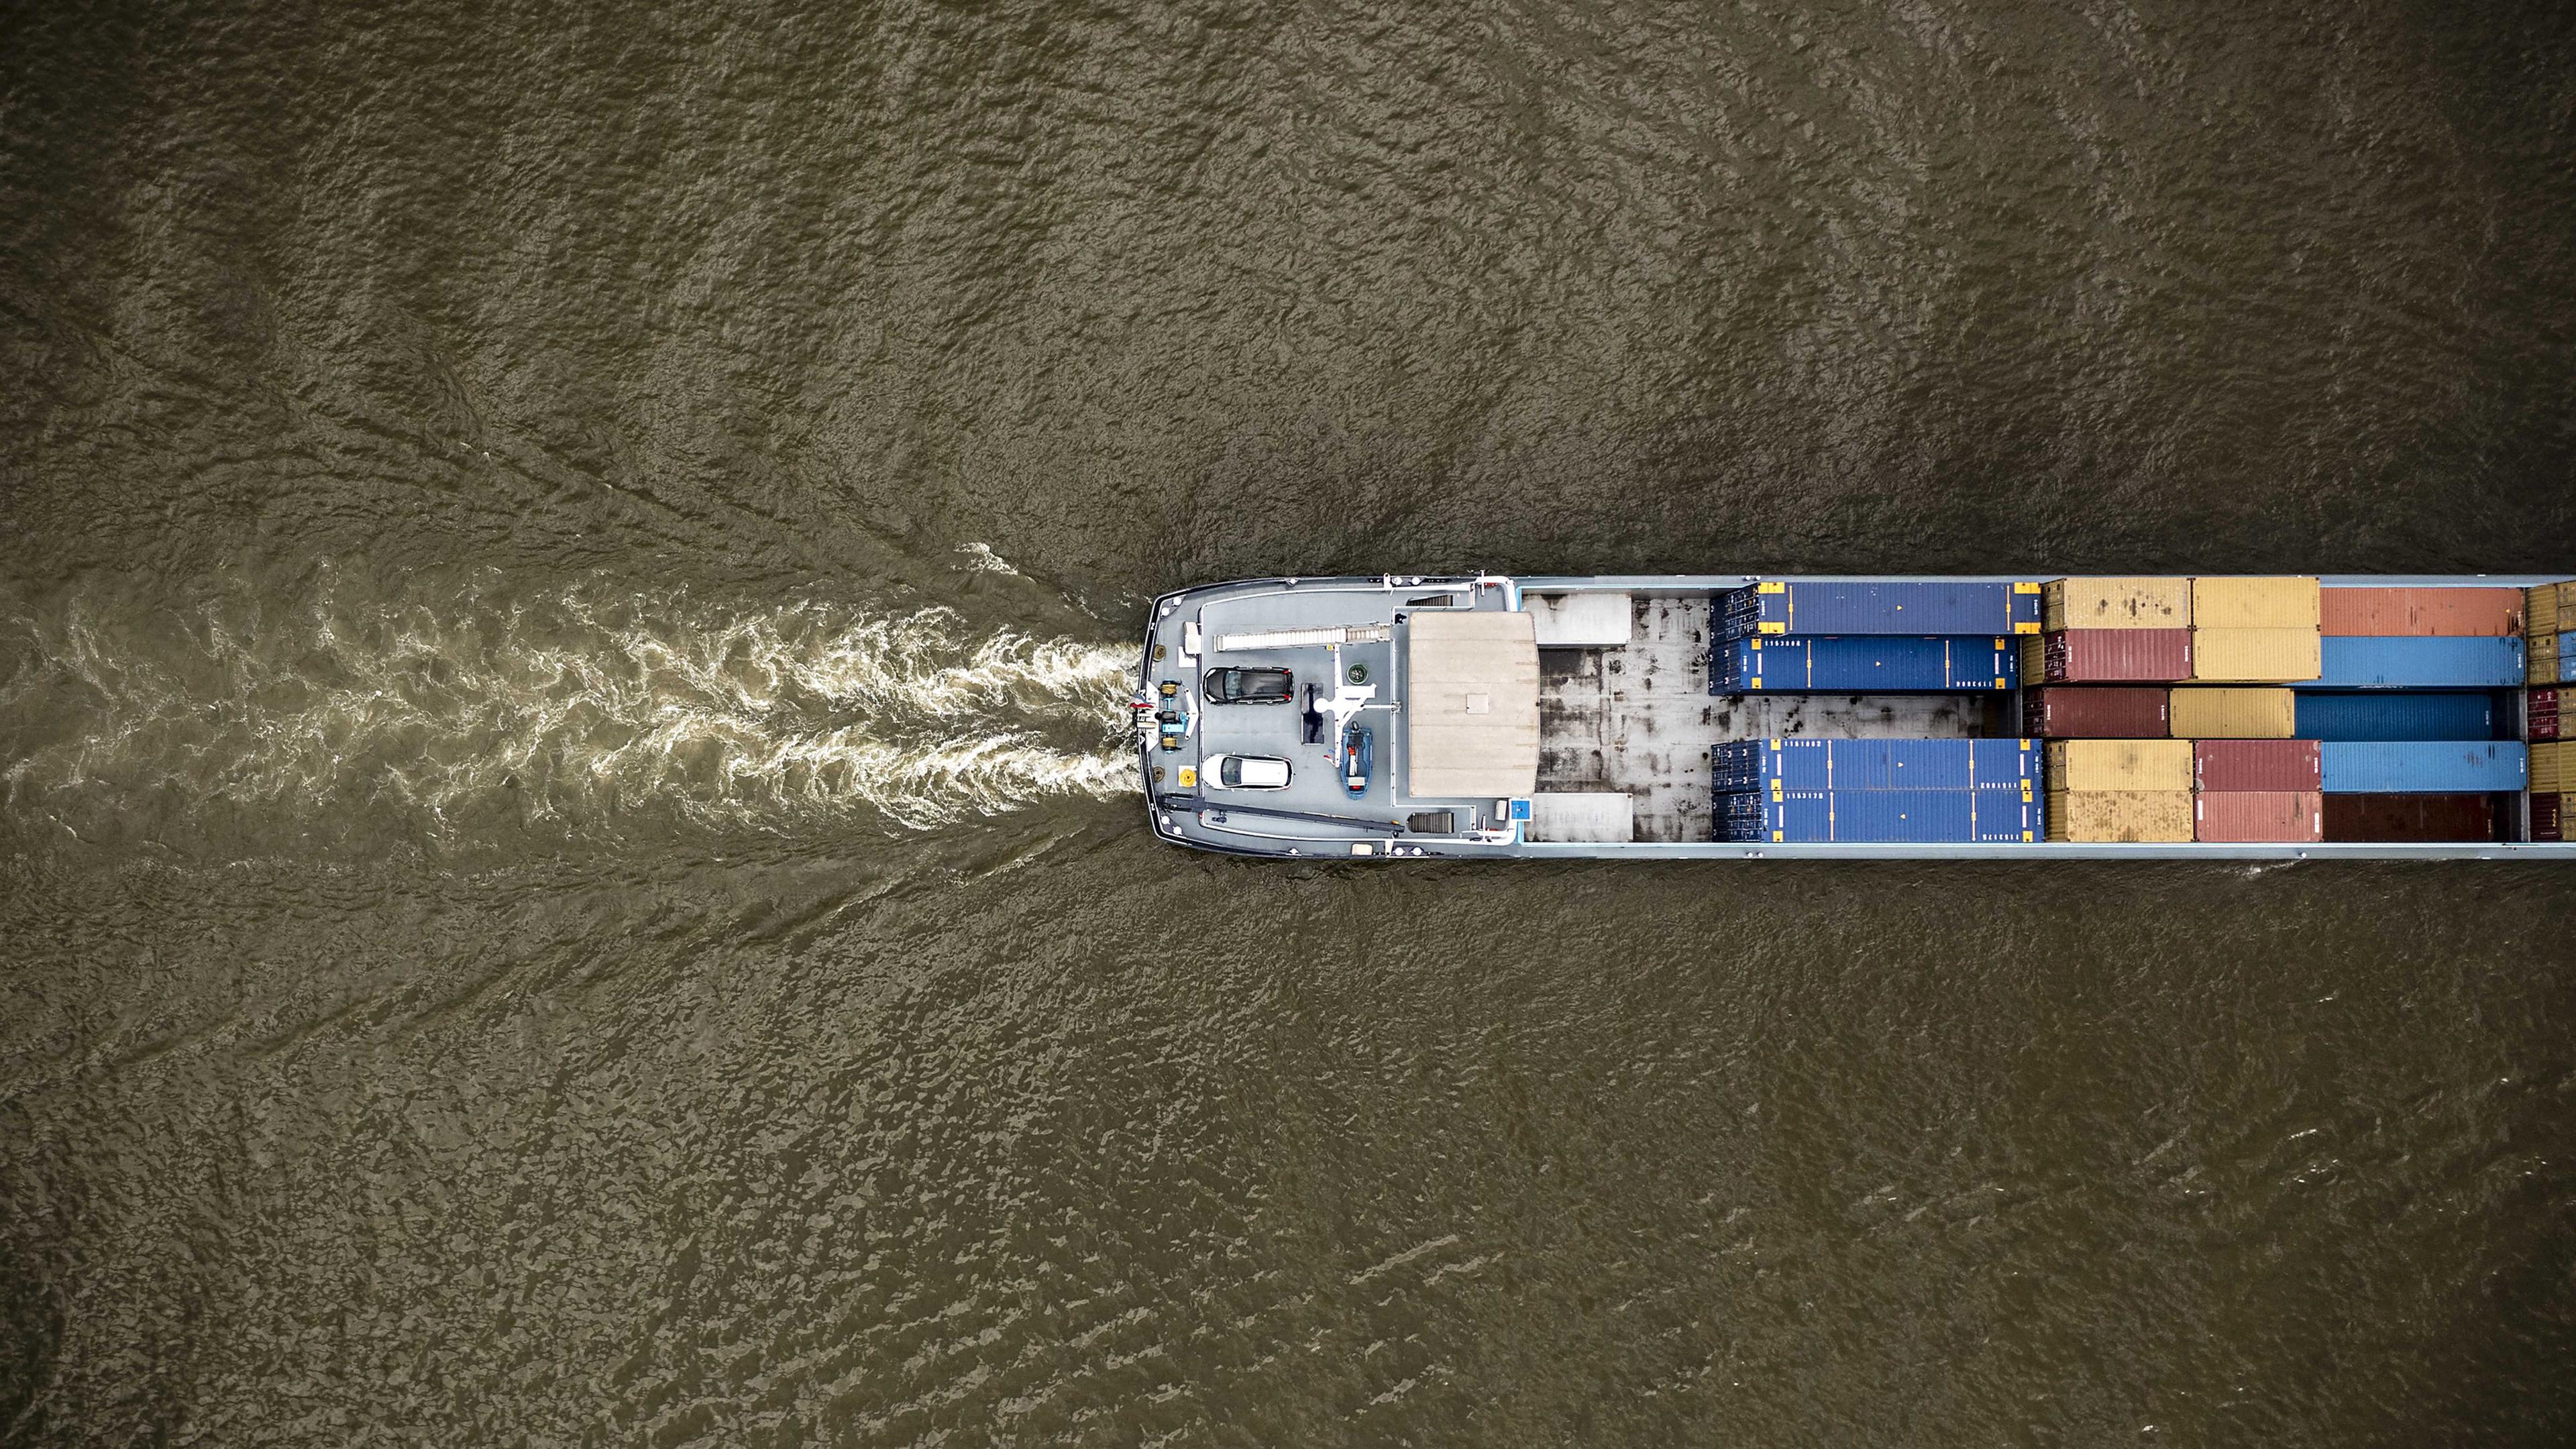 18.08.2022, Rhein bei Lobith, Niederlande: Ein Binnenschiff fährt durch den Rhein (aufgenommen aus der Vogelperspektive)